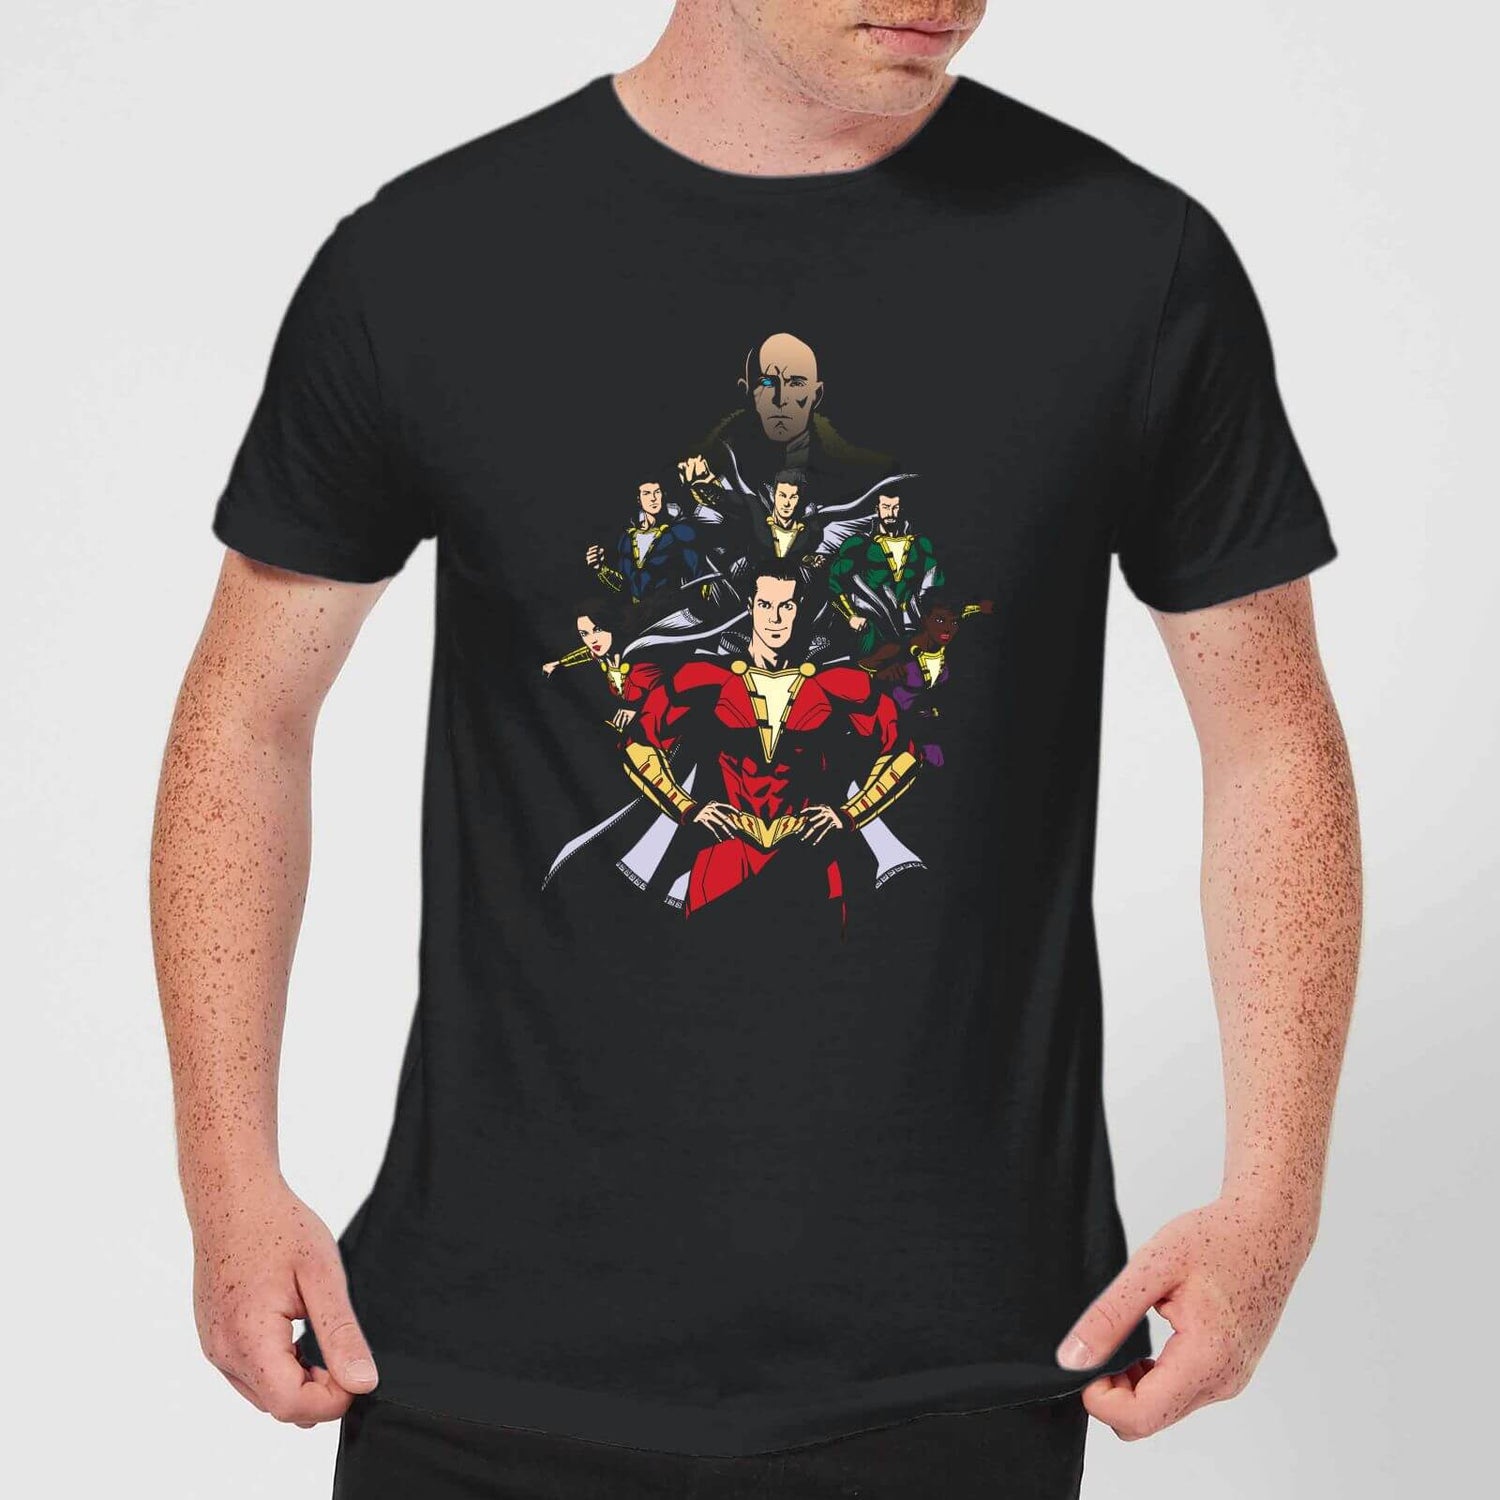 Deadpool Gifts & Merch, T Shirts & Blu-ray - Zavvi US